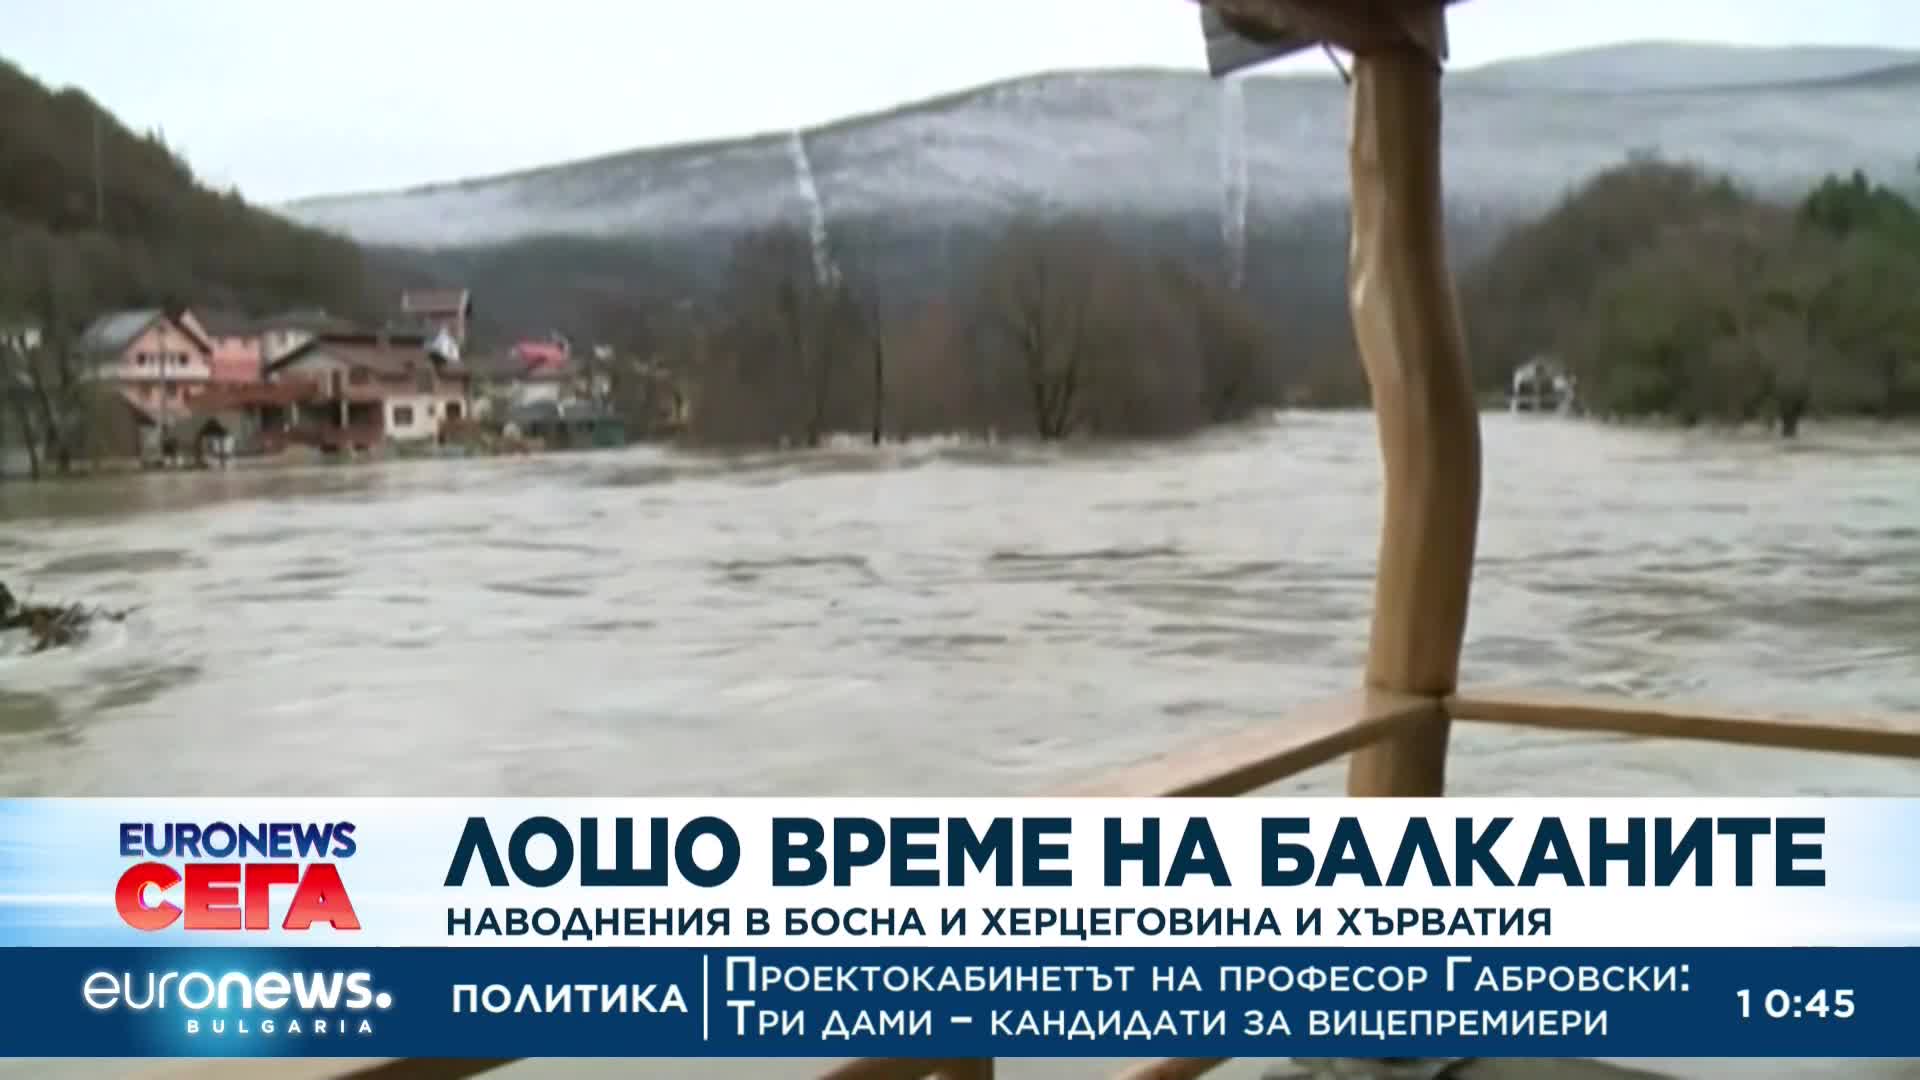 Наводнения в Босна и Херцеговина и Хърватия 